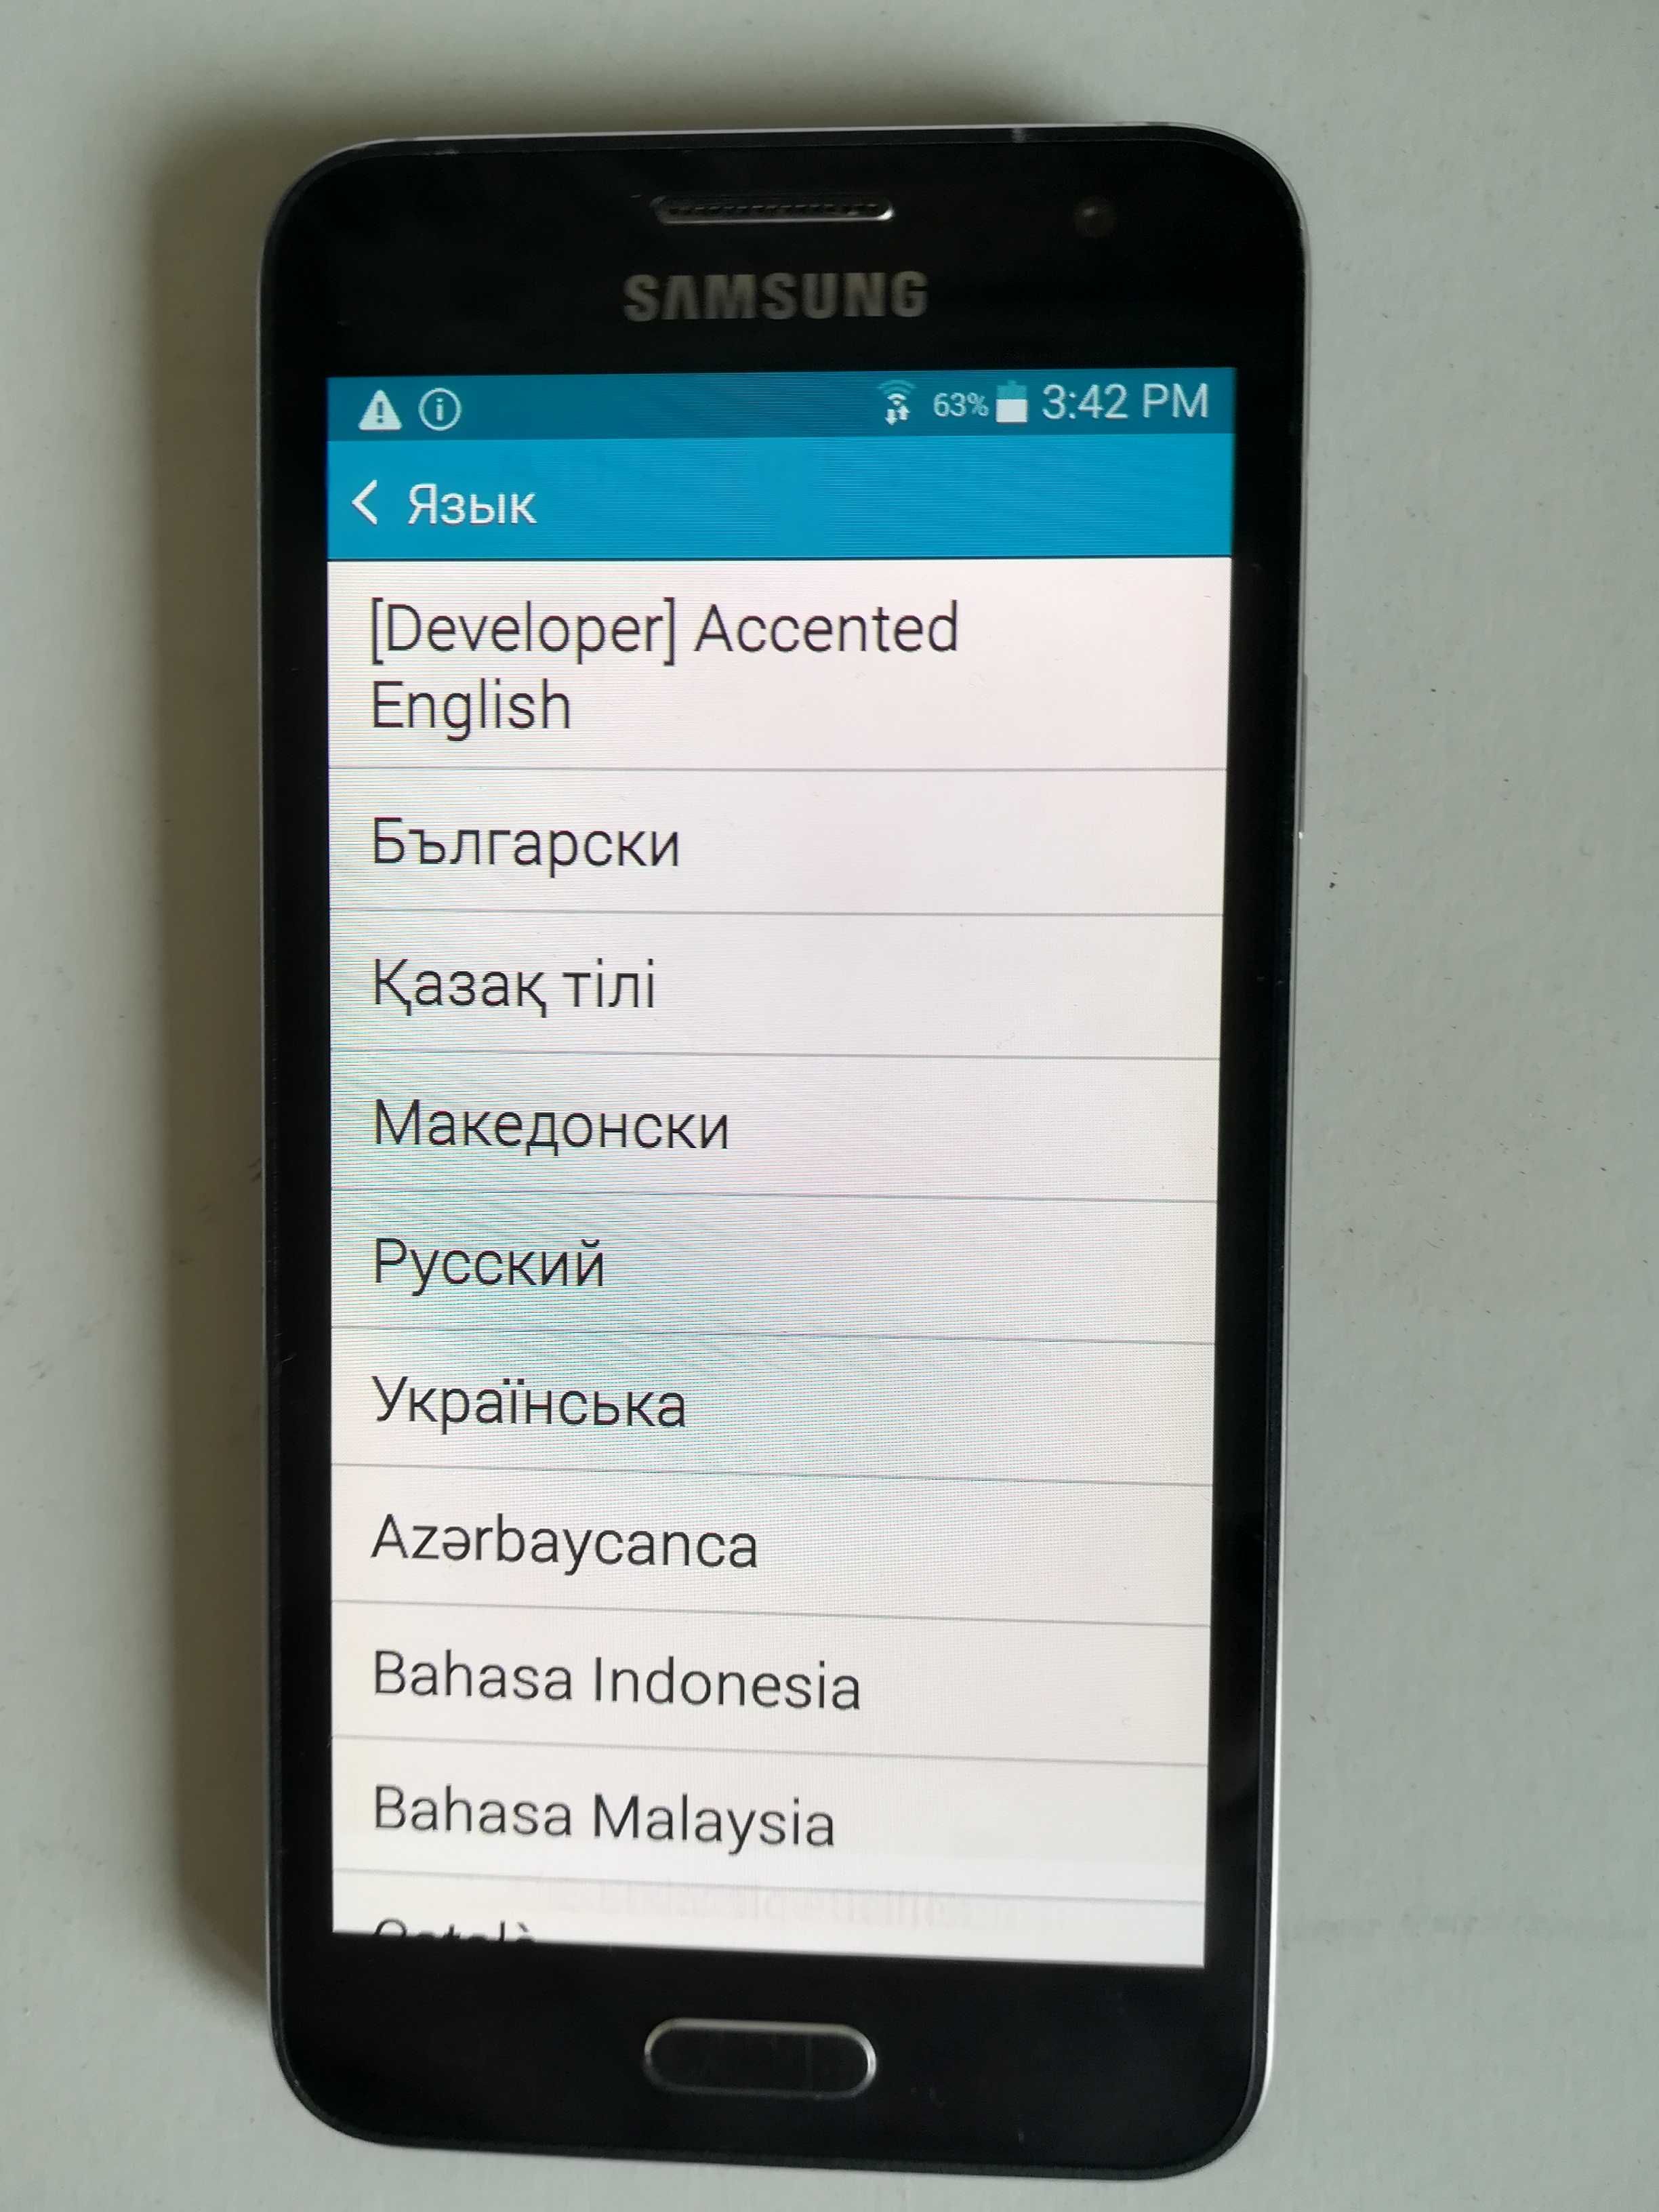 Мобильный телефон Samsung Galaxy A3 Demo Unit
SM-A300XU